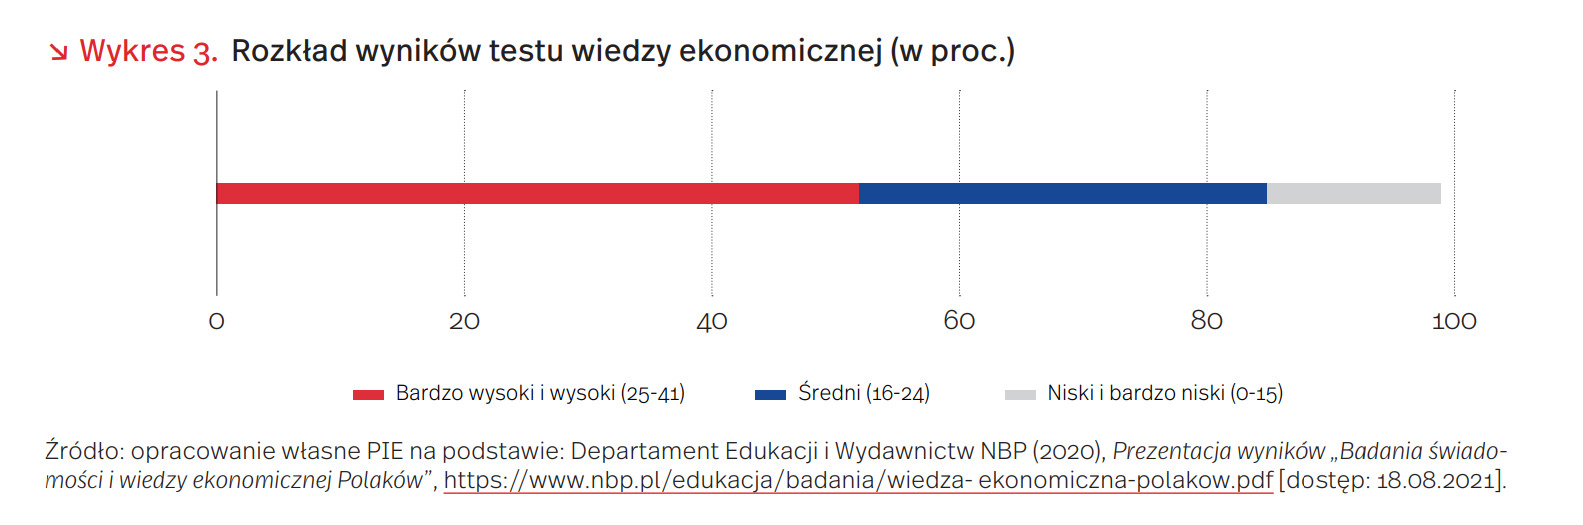 Wiedza ekonomiczna Polaków